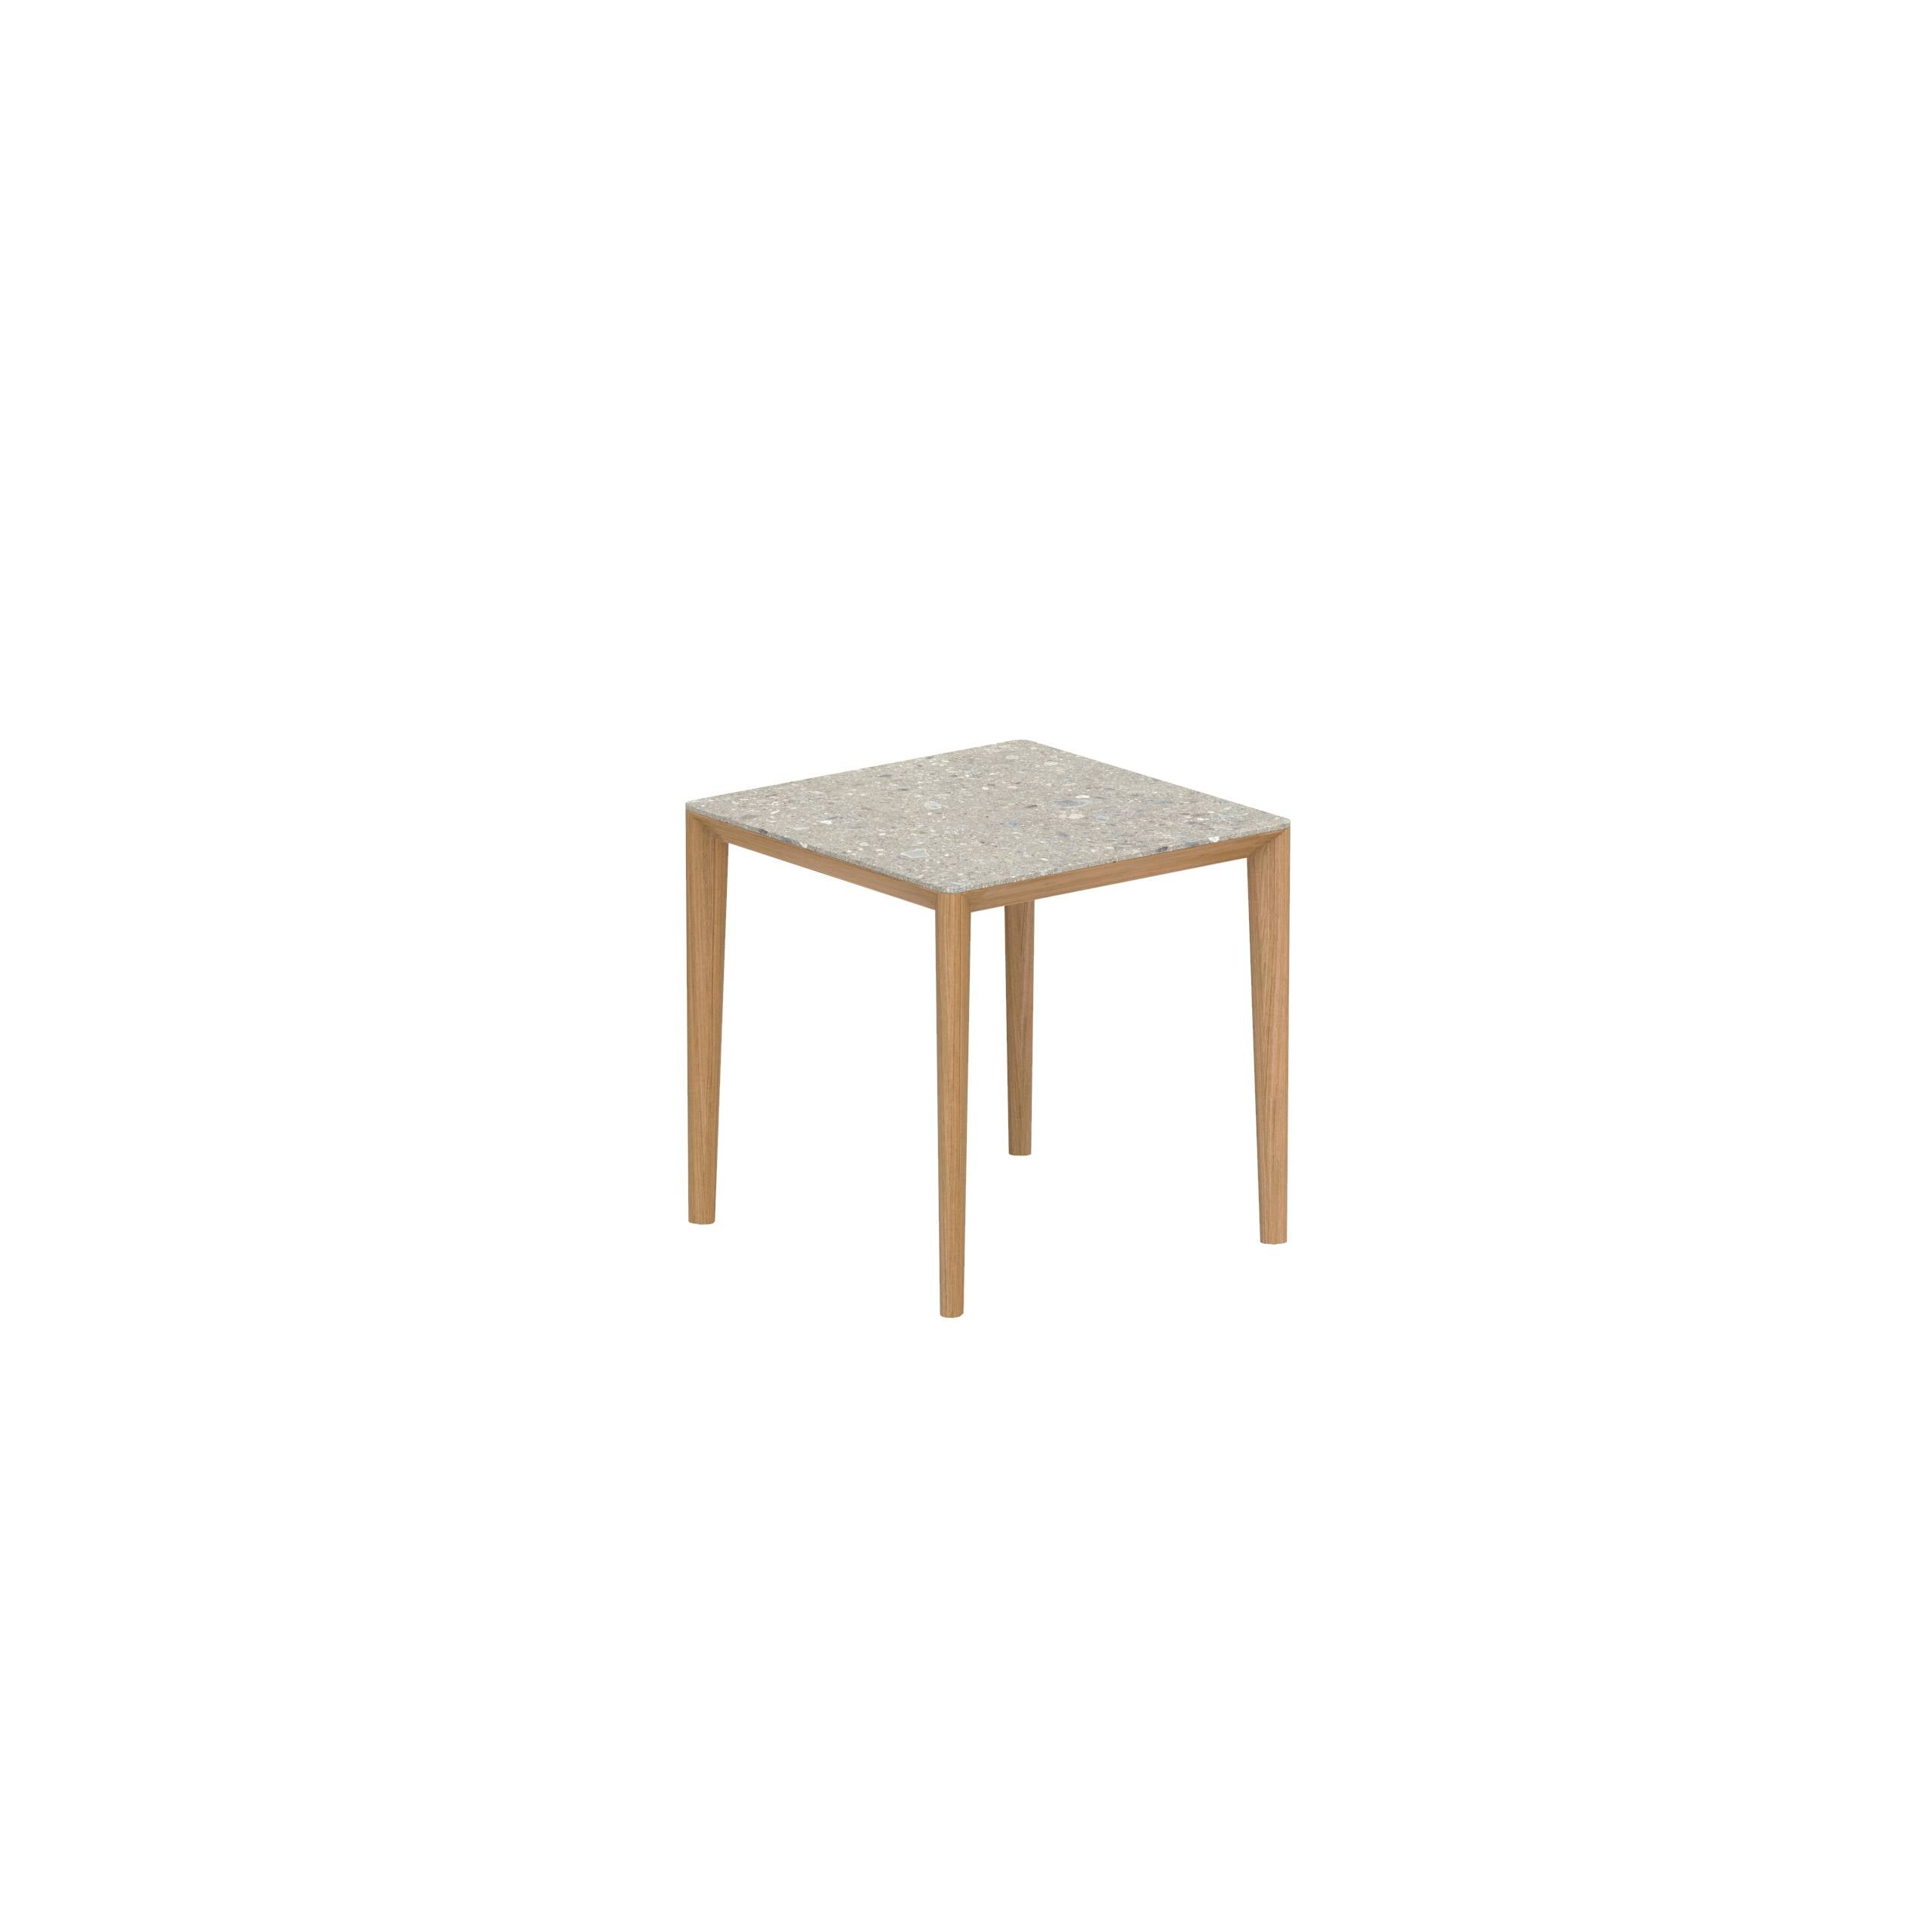 U-Nite Table 74x74cm Teak With Ceramic Tabletop In Ceppo Dolomitica